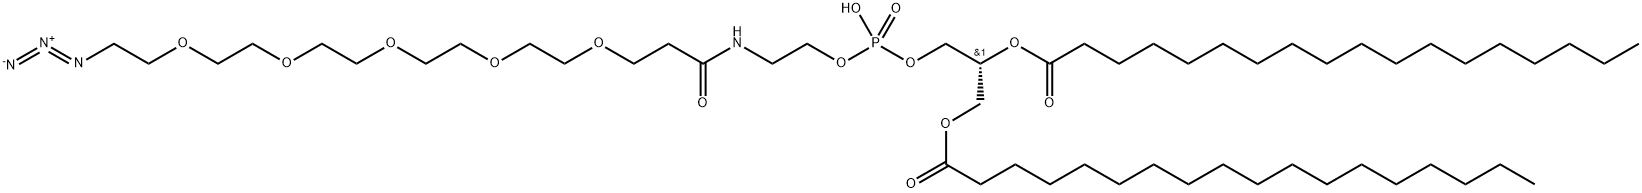 DSPE-PEG5-azide|DSPE-PEG5-AZIDE